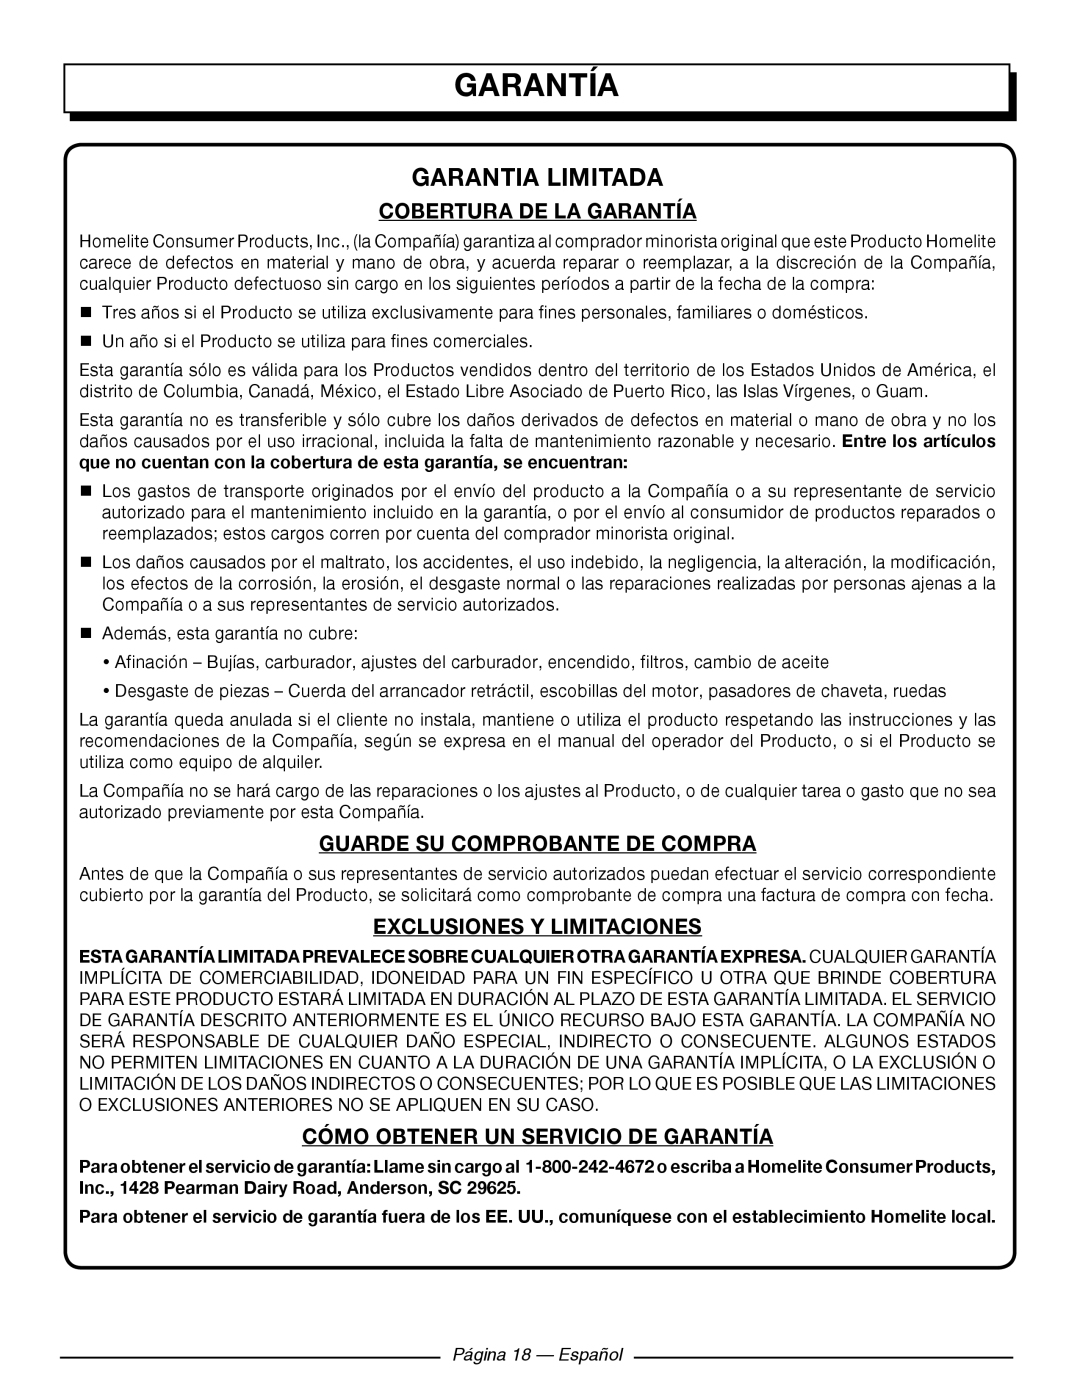 Homelite UT902250 Garantia Limitada, Cobertura De La Garantía, Guarde Su Comprobante De Compra, Página 18 — Español 